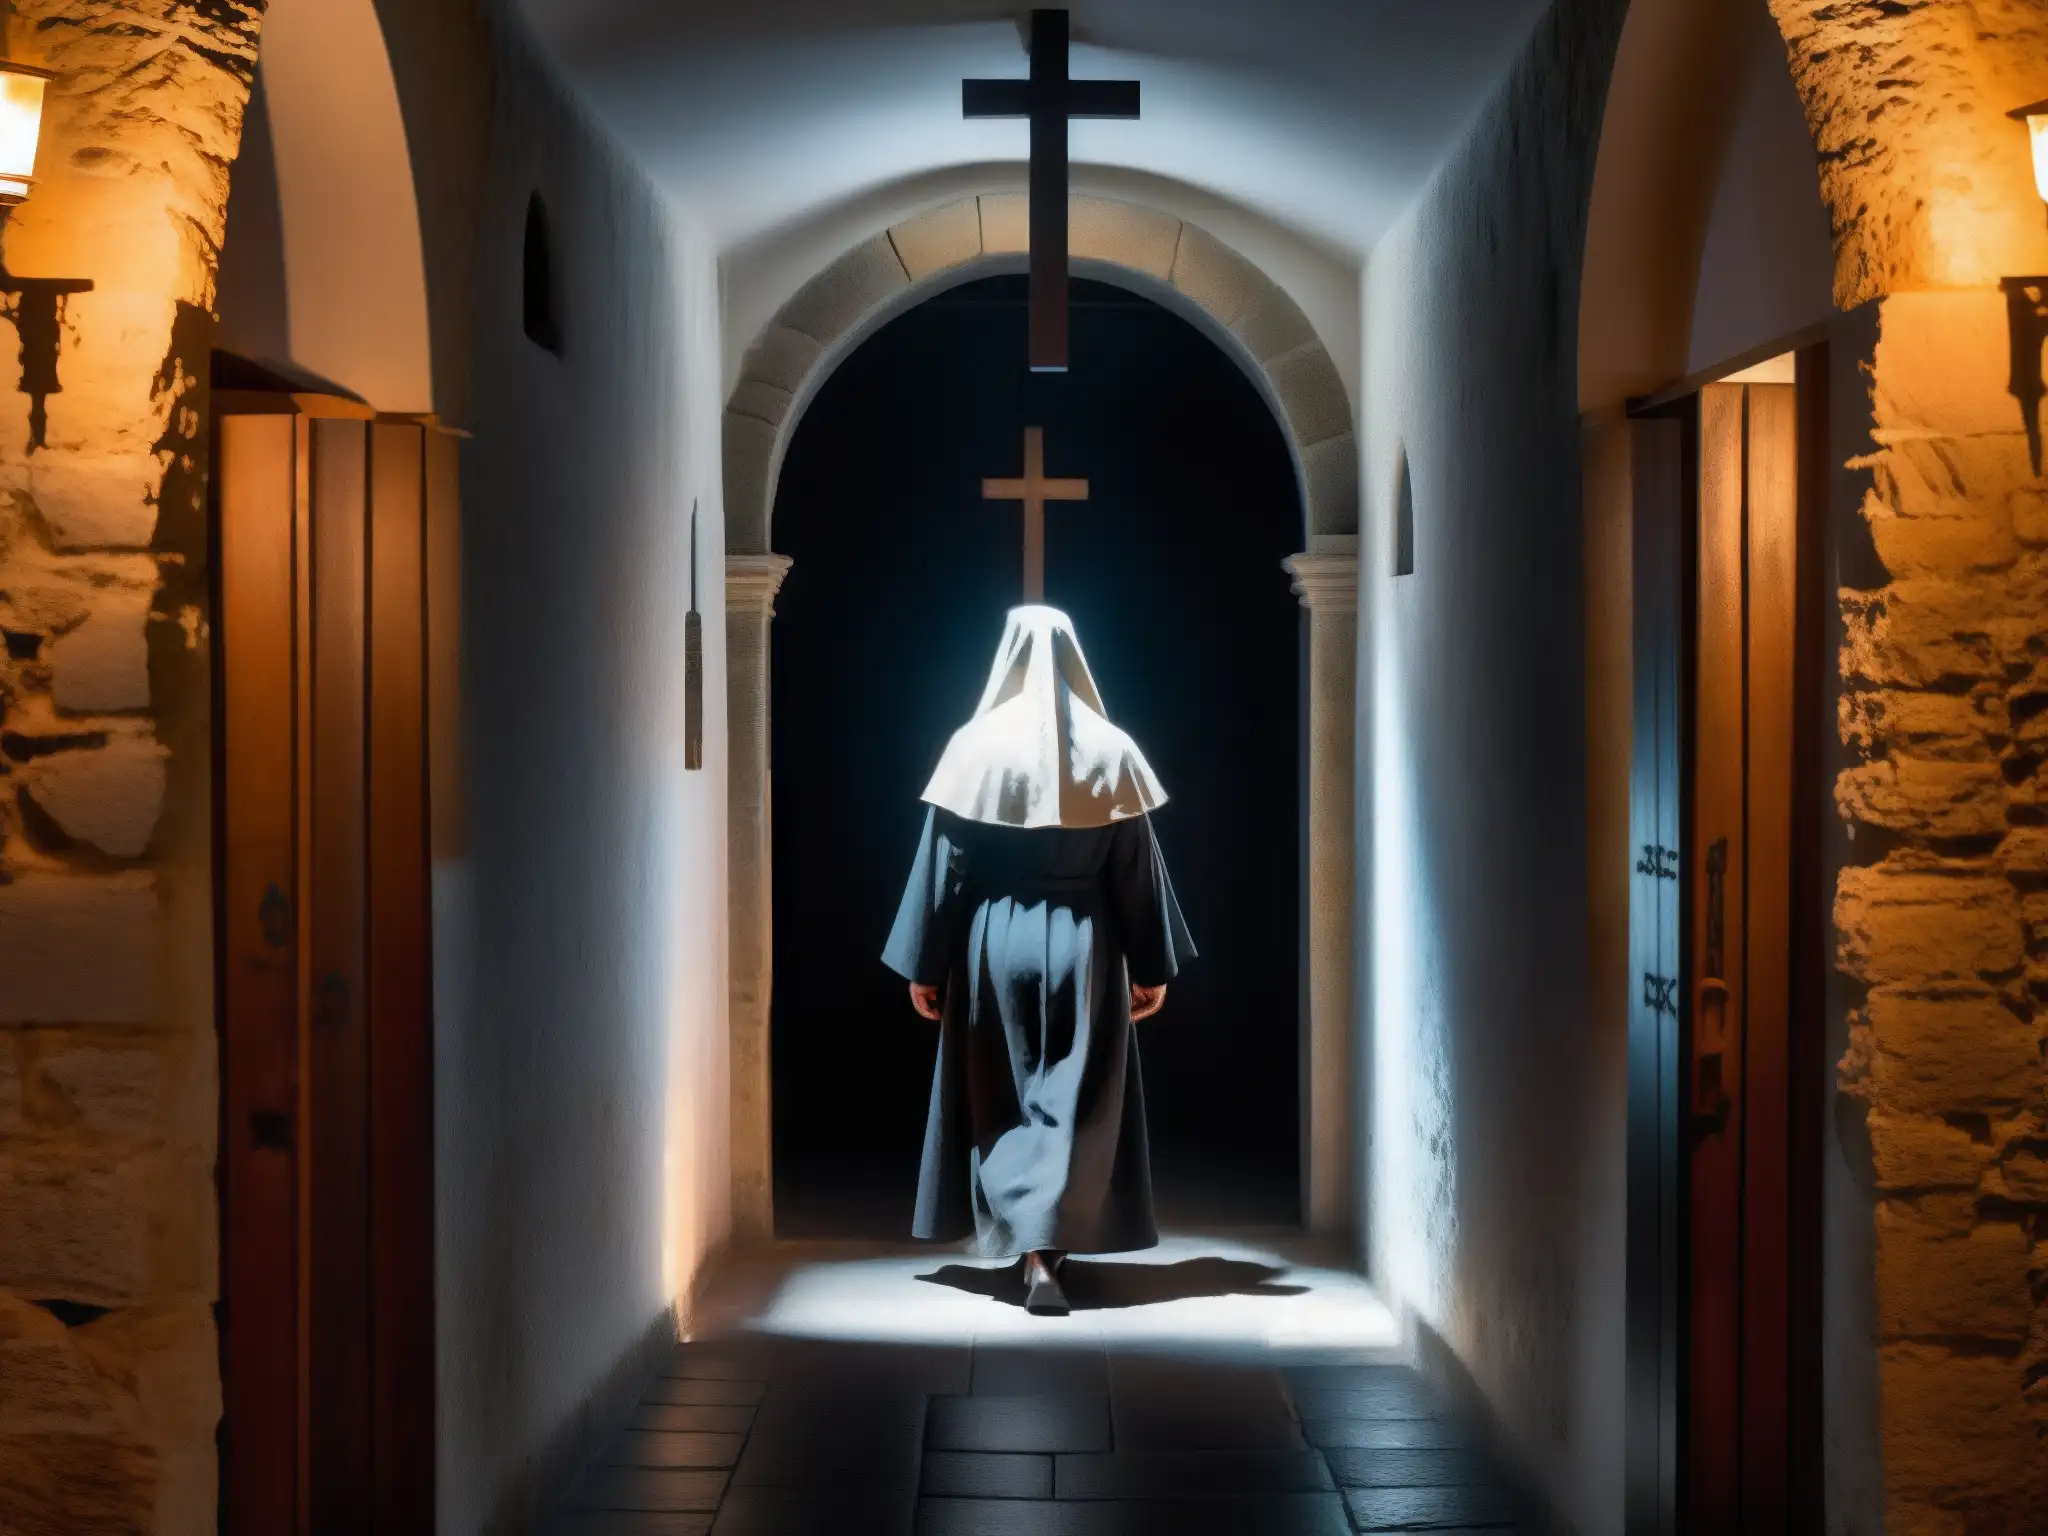 Corredor sombrío de convento con figura fantasmal monja, vela y cruz en puerta de madera